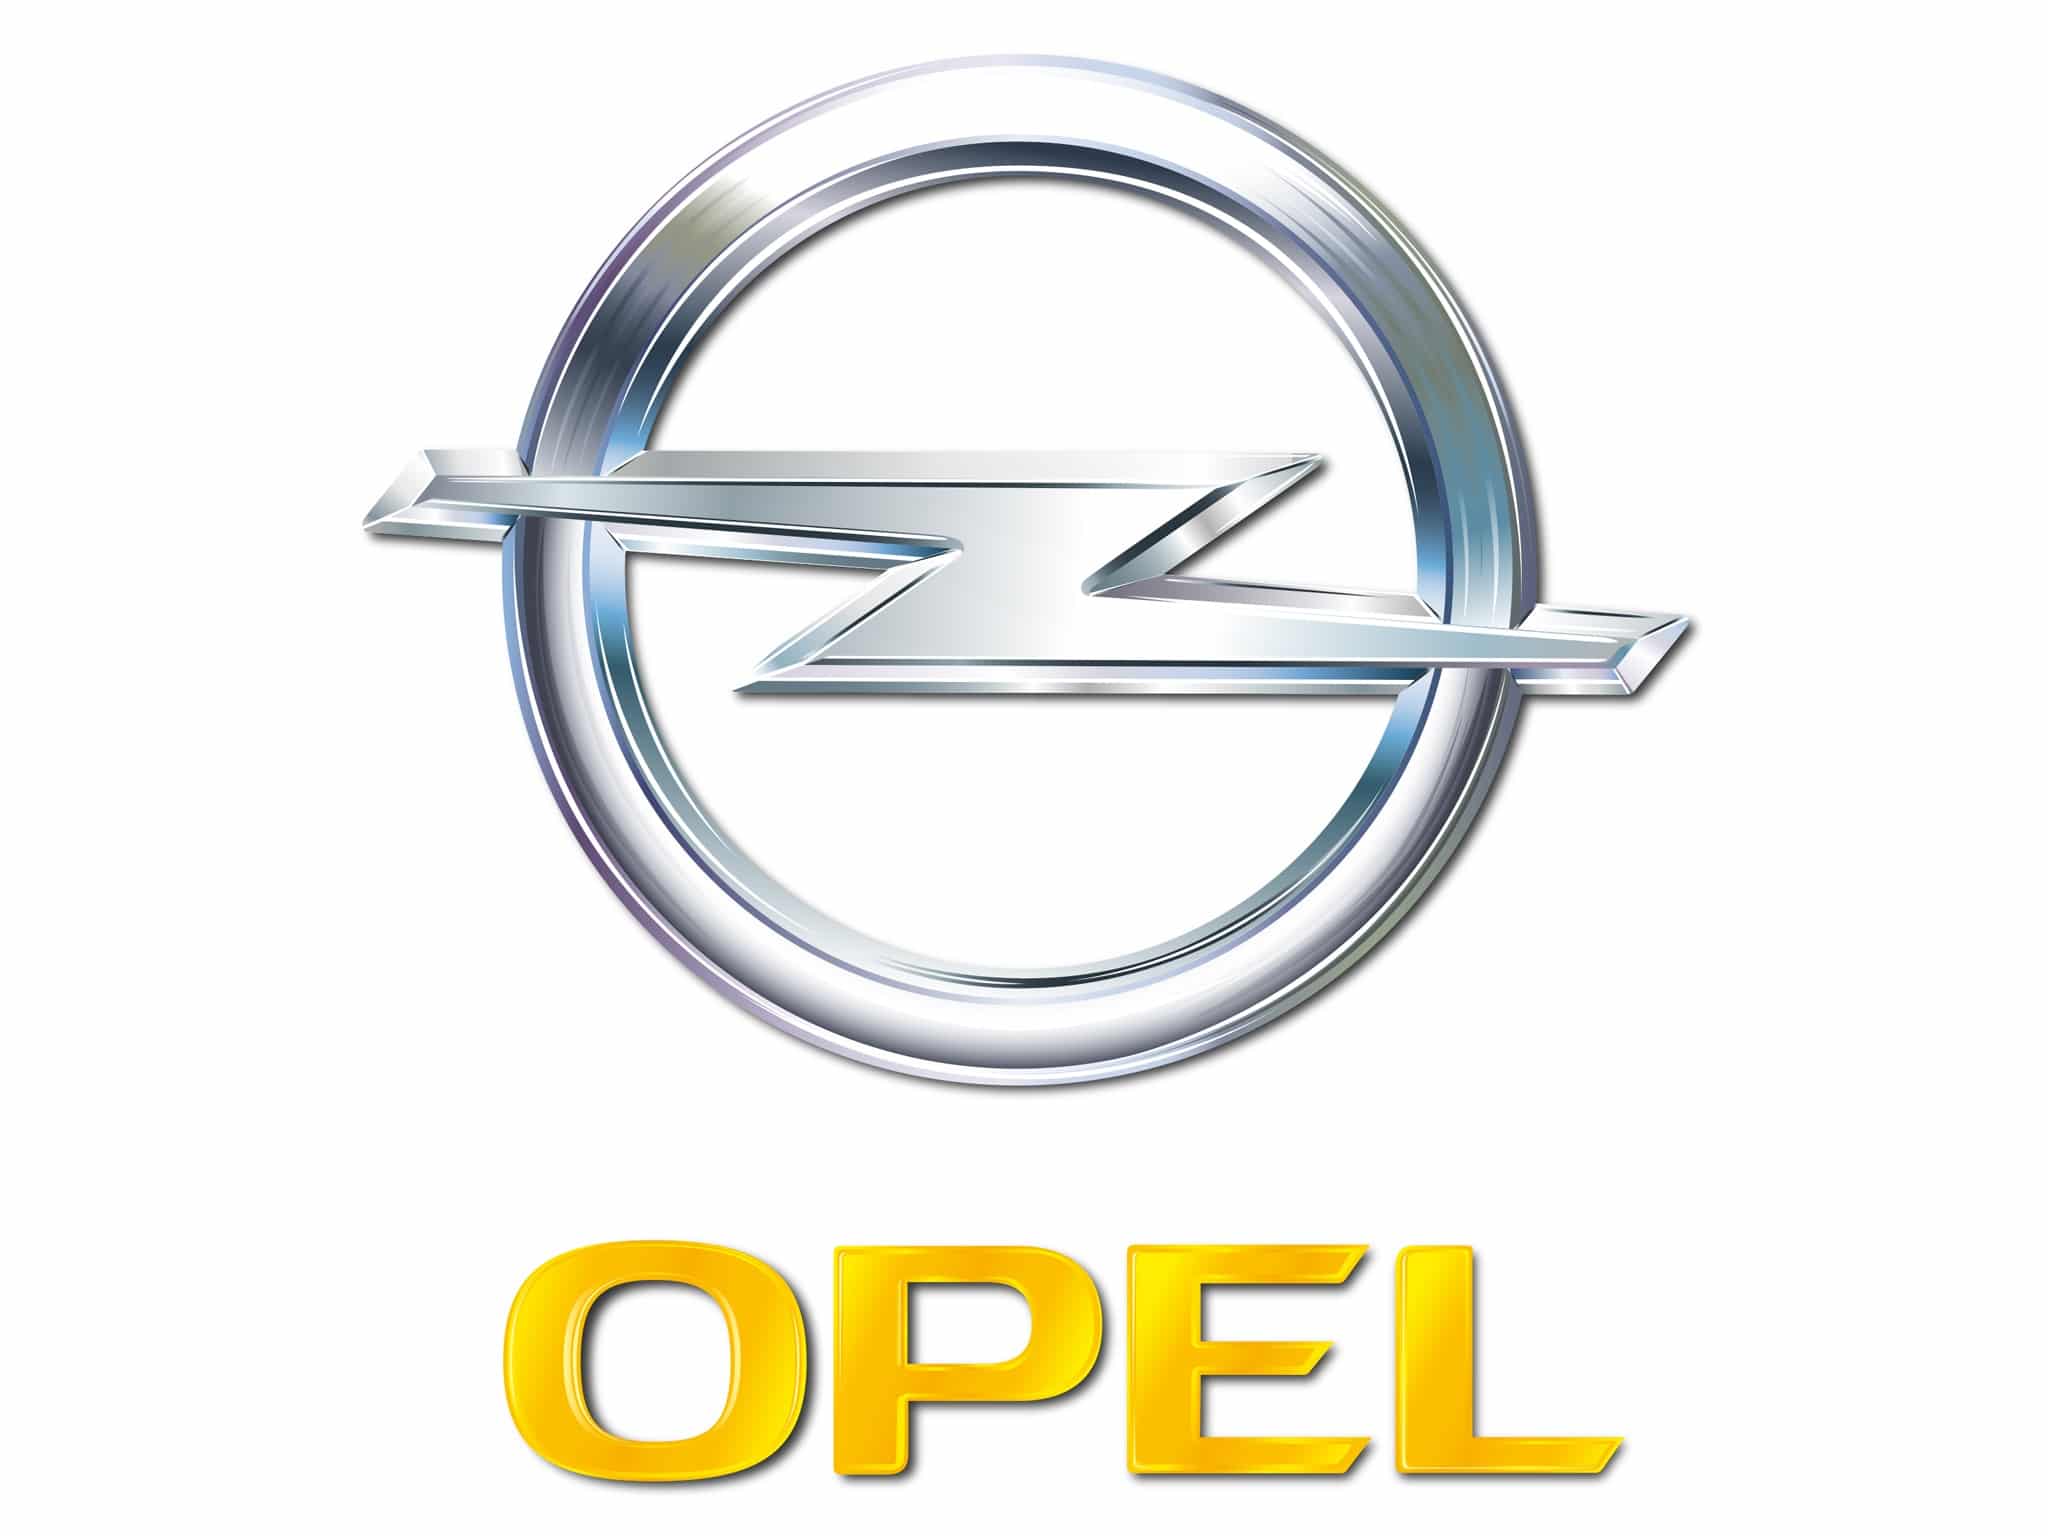 Logo du constructeur automobile allemand Opel avec le siège à